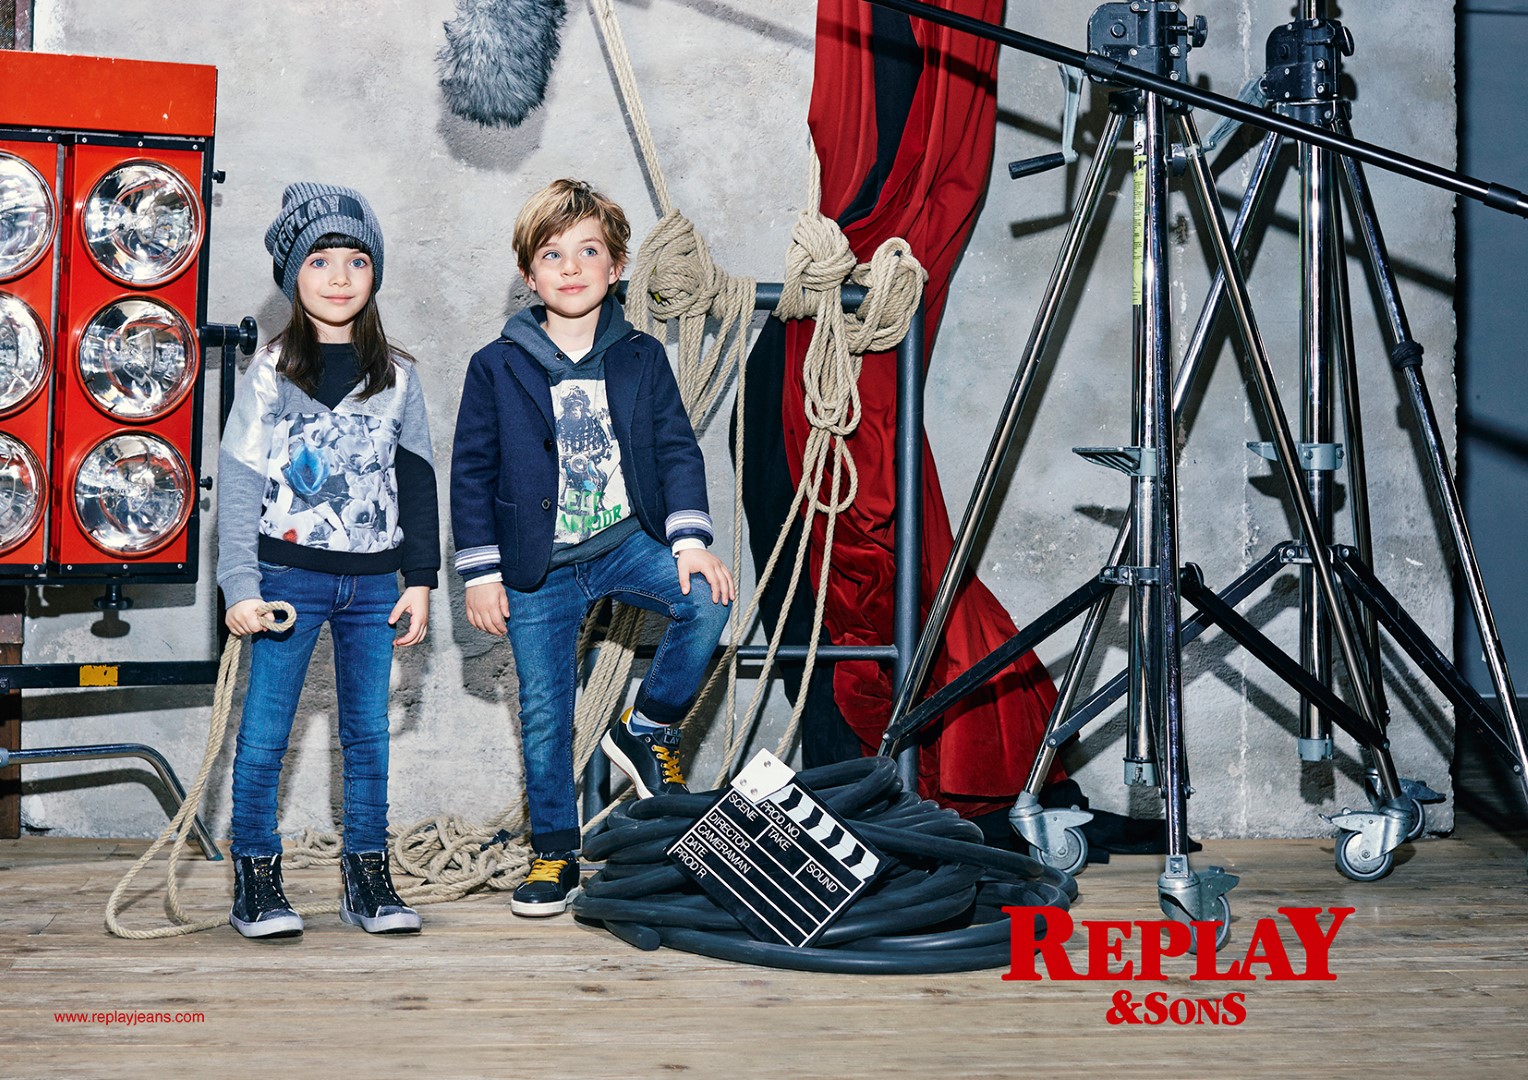 Replay & Sons campagna pubblicitaria autunno inverno 2015 2016: il backstage cinematografico